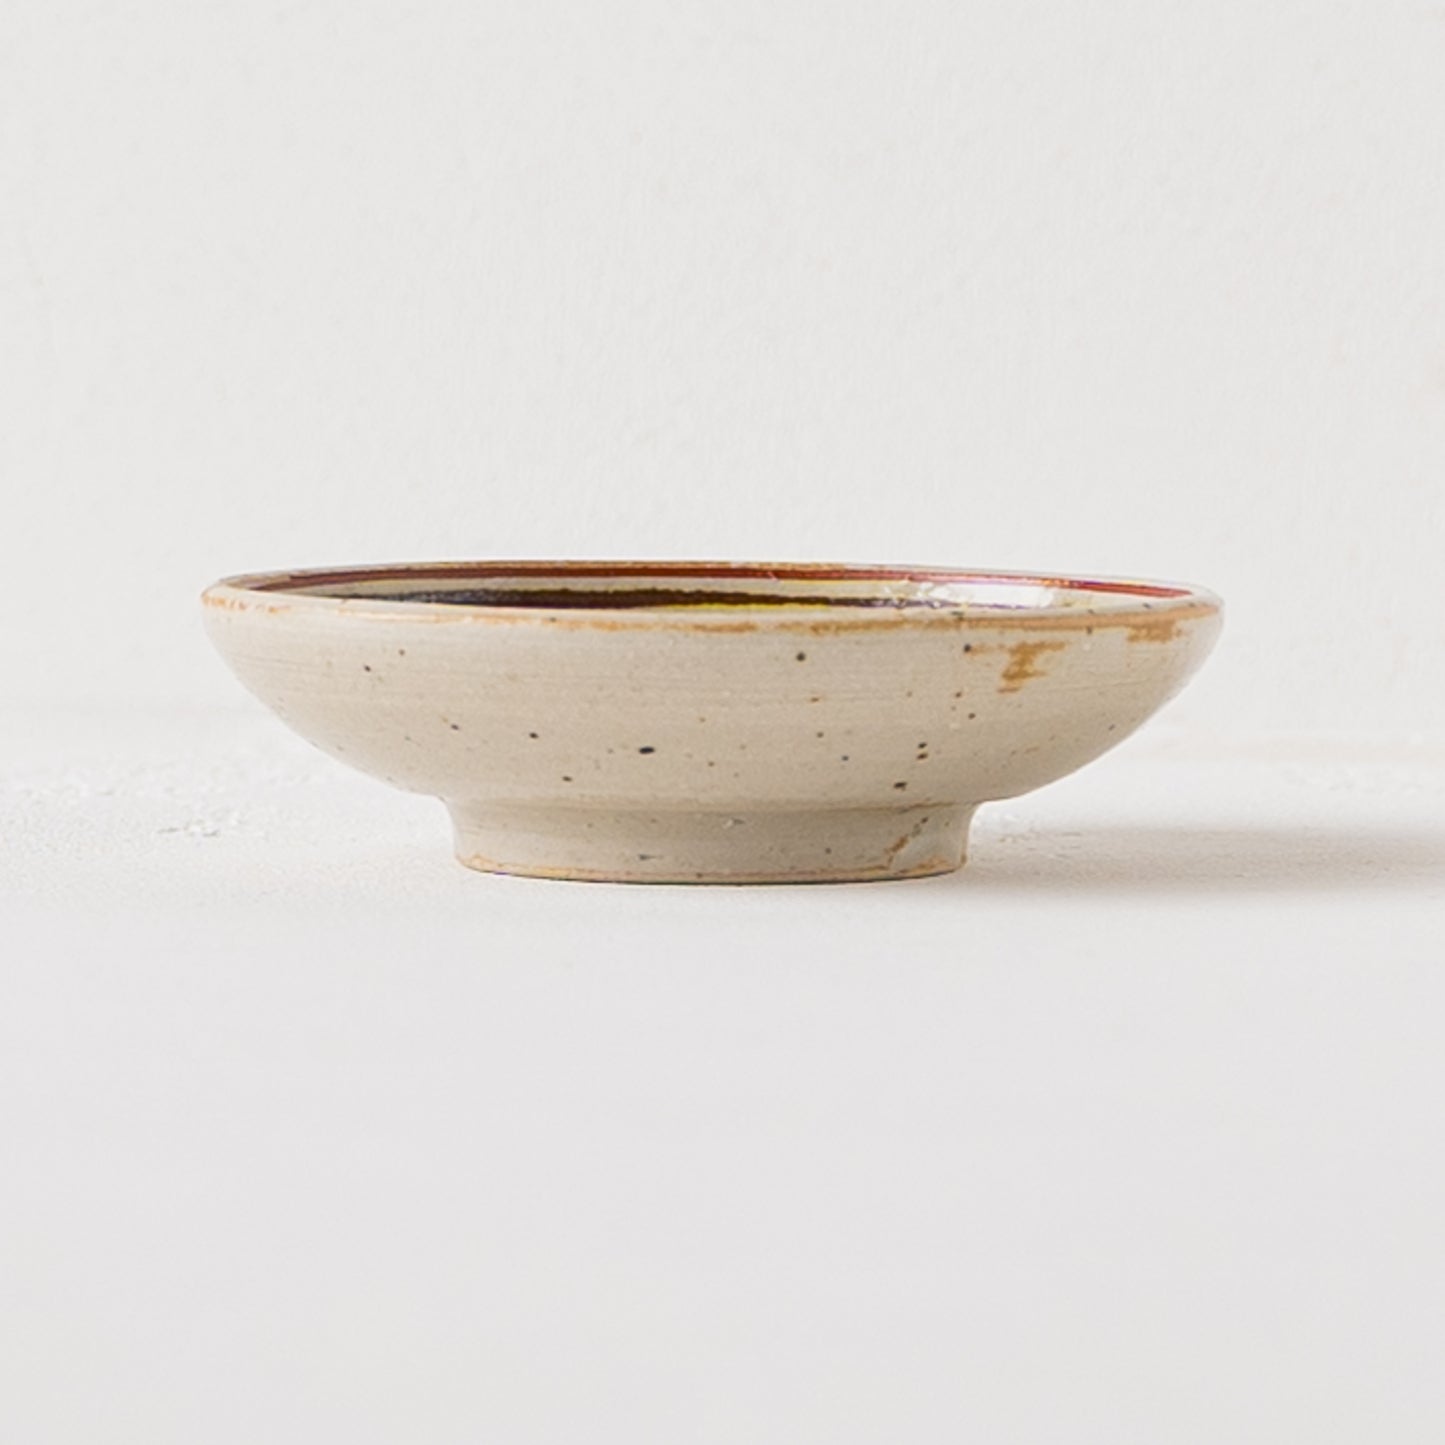 古びた雰囲気がおしゃれで味わい深い冨本大輔さんの灰釉絵付3寸皿